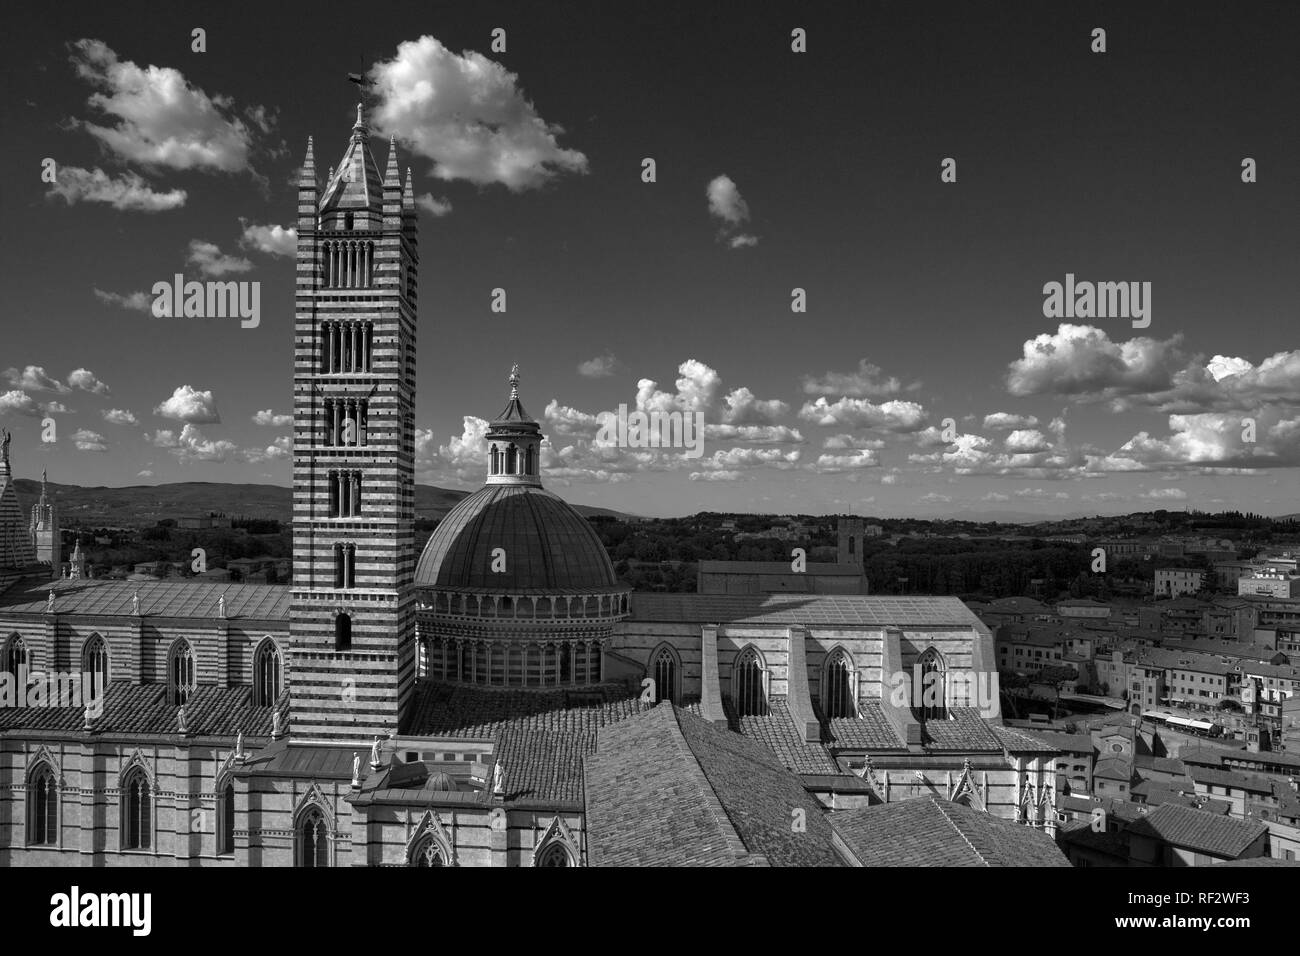 La cathédrale de Sienne, vu de la 'Facciatone' de la Duomo Nuovo, de l'autre côté de la Piazza Iacopo della Quercia, Sienne, Toscane, Italie : version noir et blanc Banque D'Images